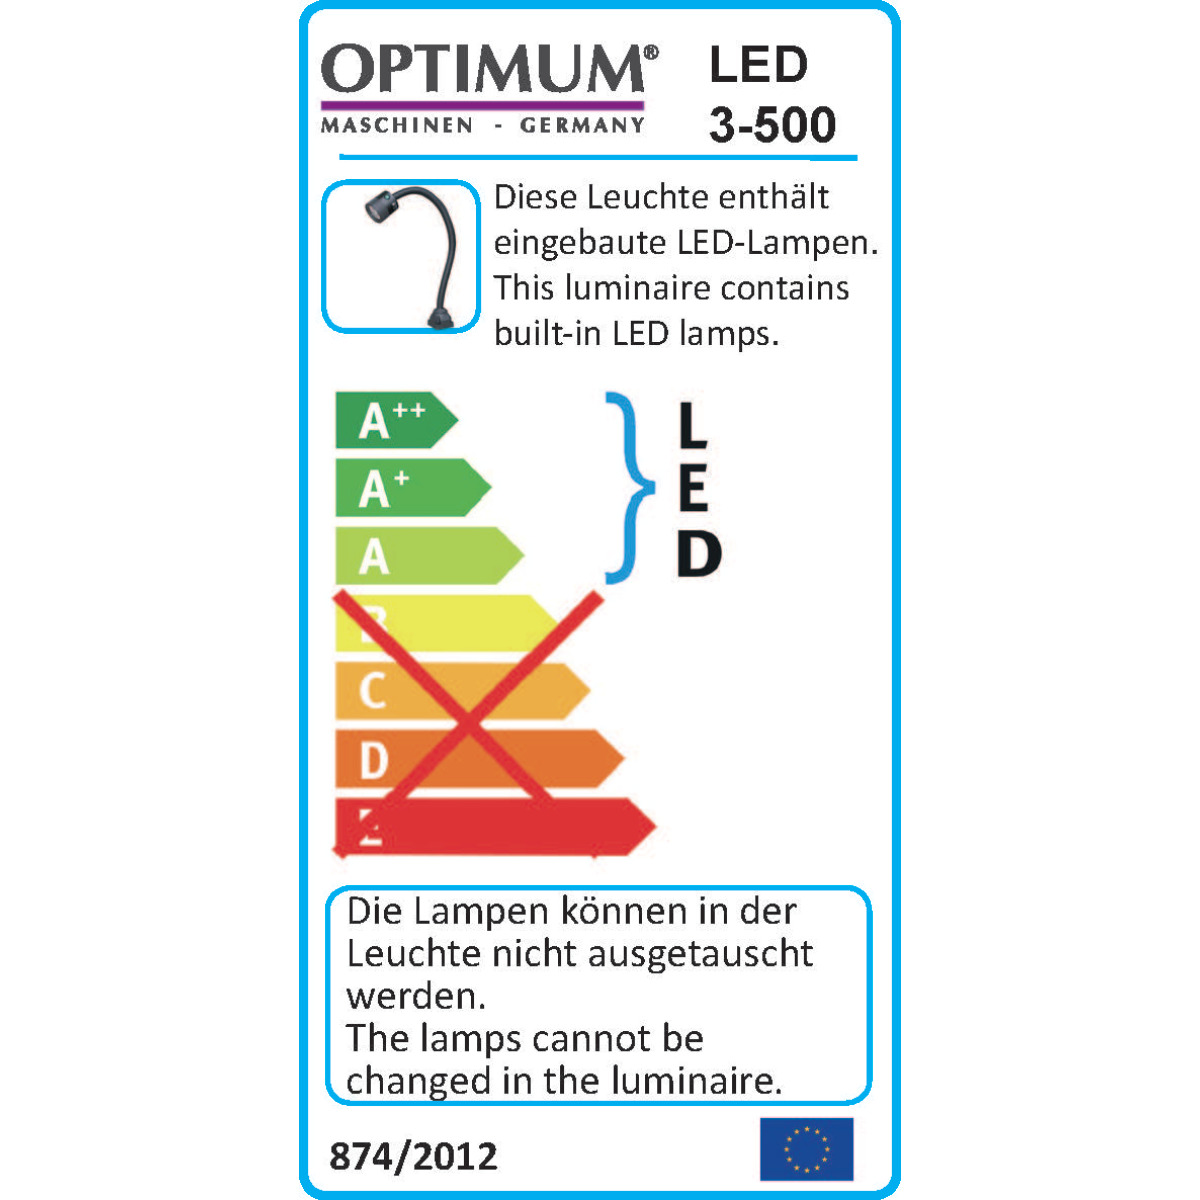  Optimum LED-Maschinenlampe LED 3-500 